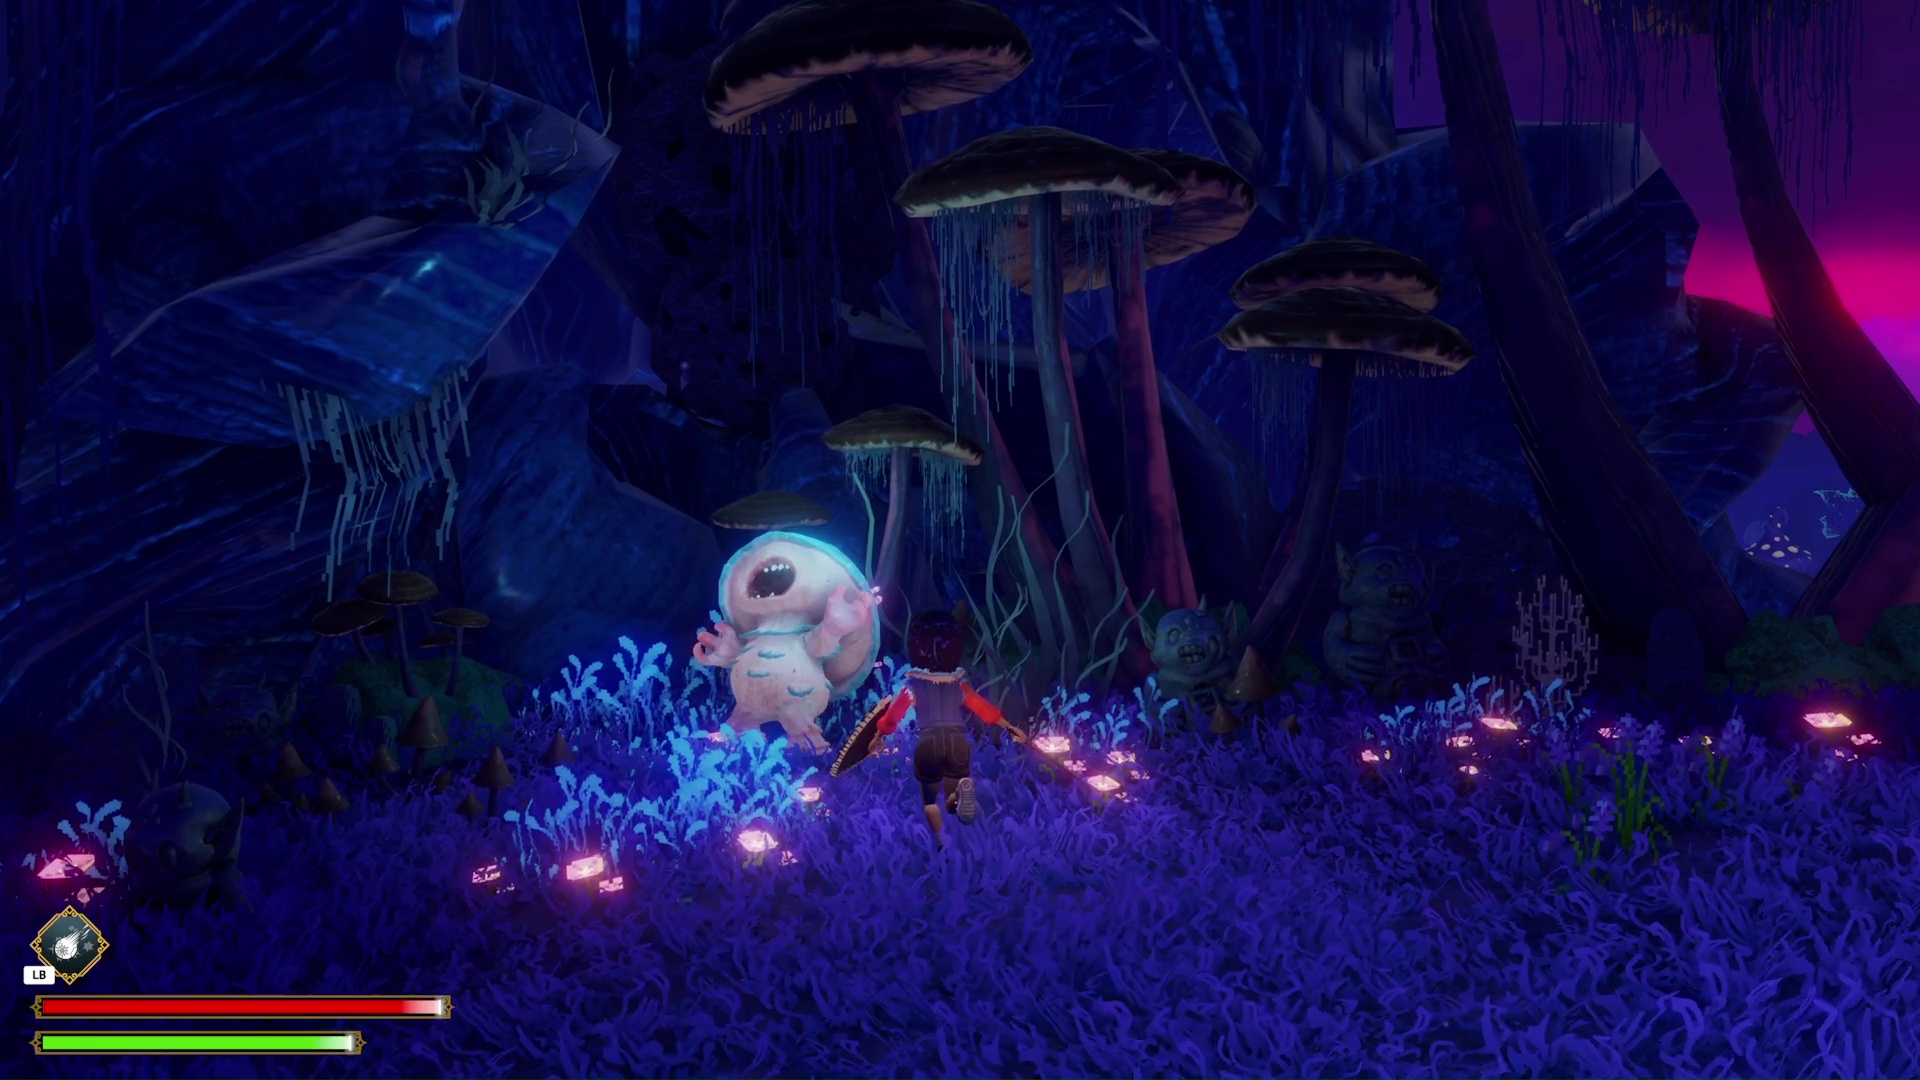 The player fights a hostile mushroom monster in Ravenlok.